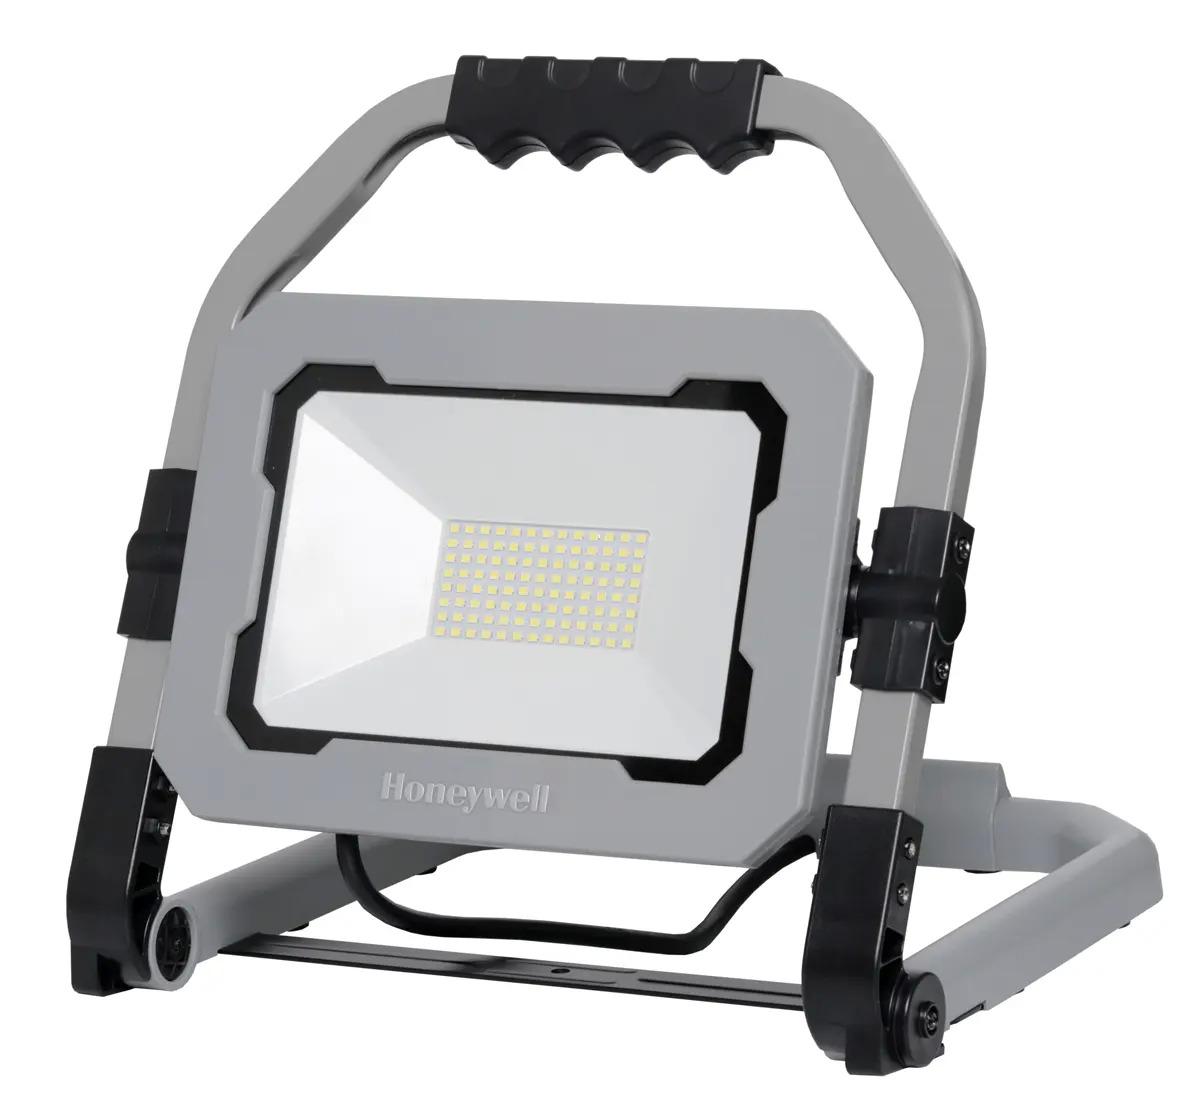 Honeywell LED Portable Work Light for $16.44